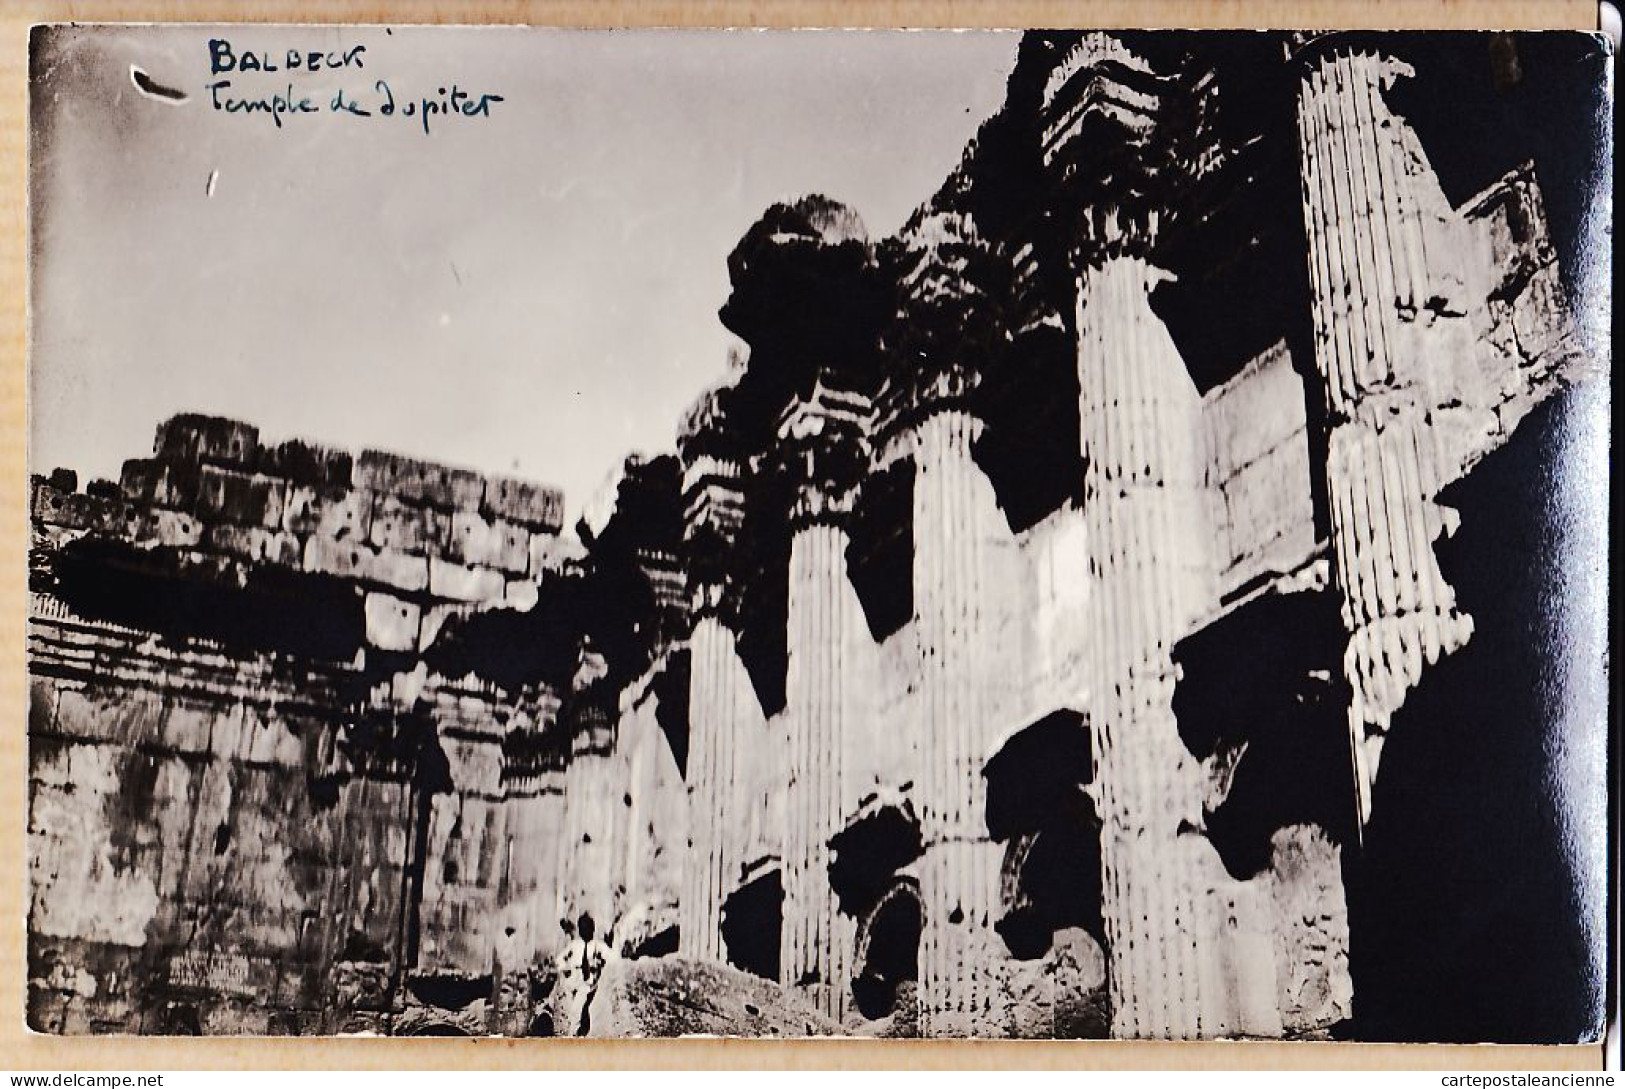 01814 / Rare Carte-Photo 1920s BALBECK Liban Temple De JUPITER Ruines Gréco-romaines-Lebanon Baalbek - Liban